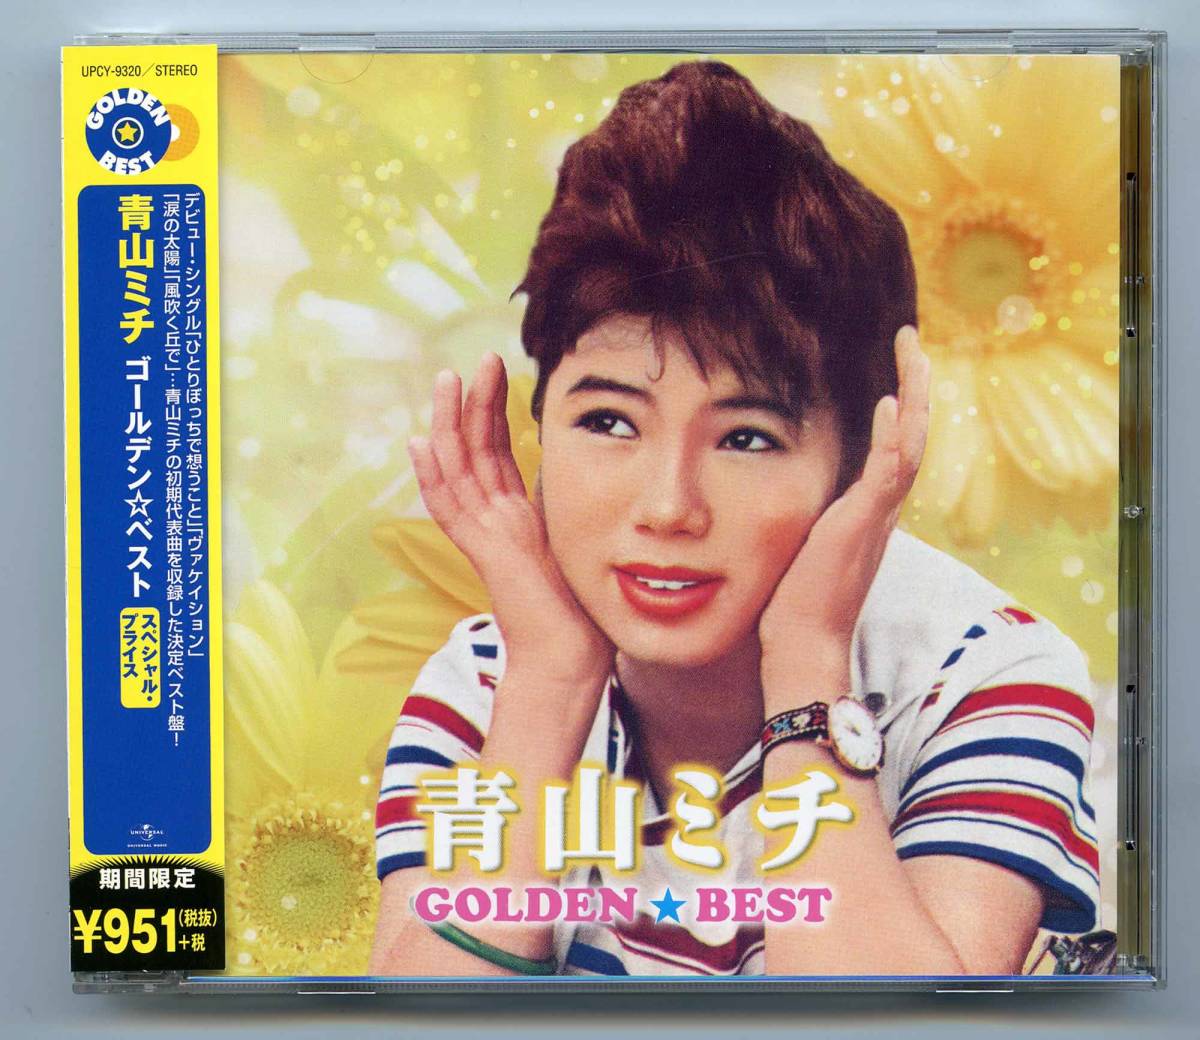 青山ミチ CD「ゴールデン☆ベスト」帯歌詞カード付き完品 UPCY-9320 新品同様_画像1